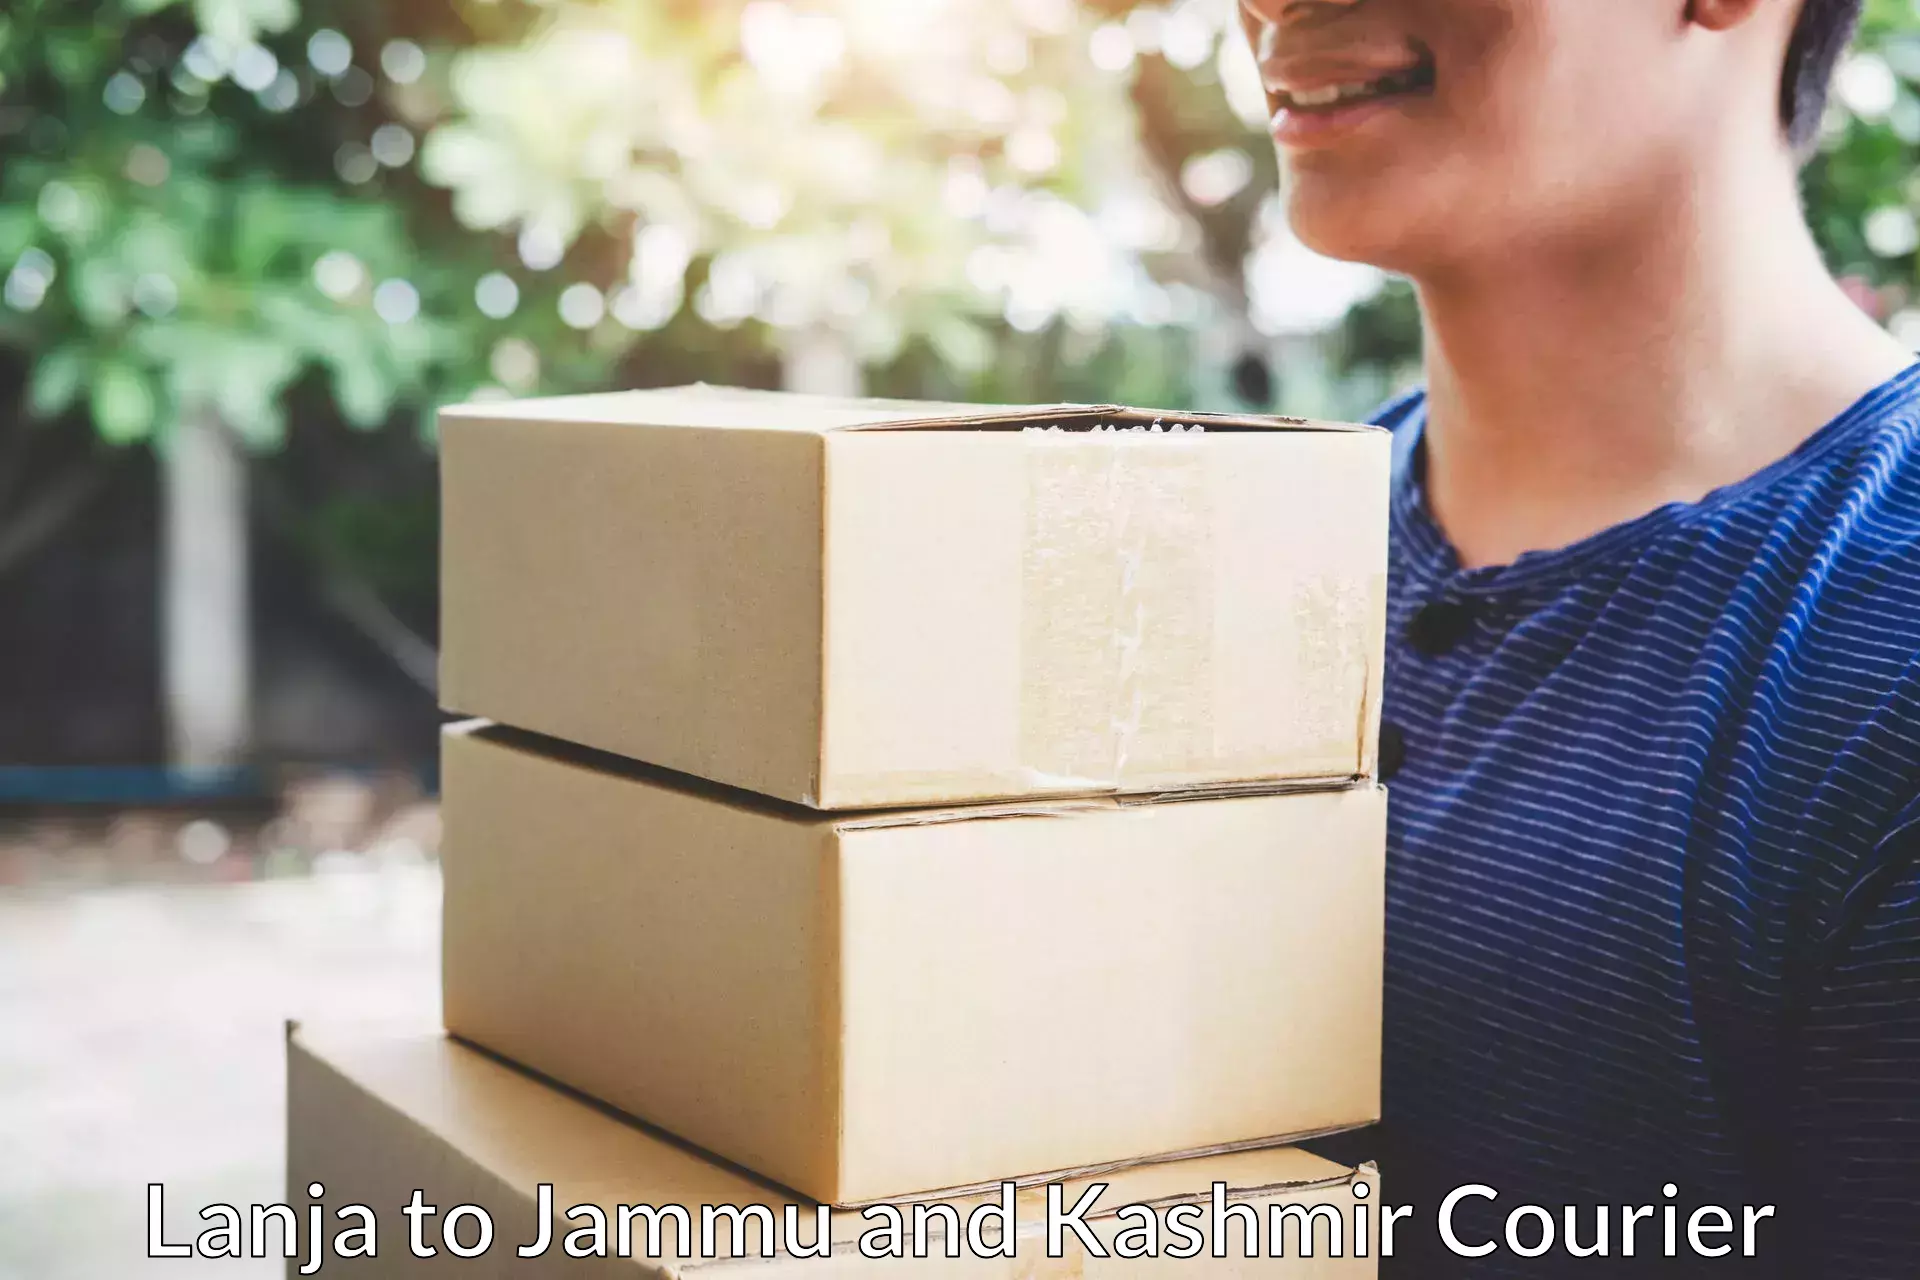 Professional movers Lanja to Jammu and Kashmir